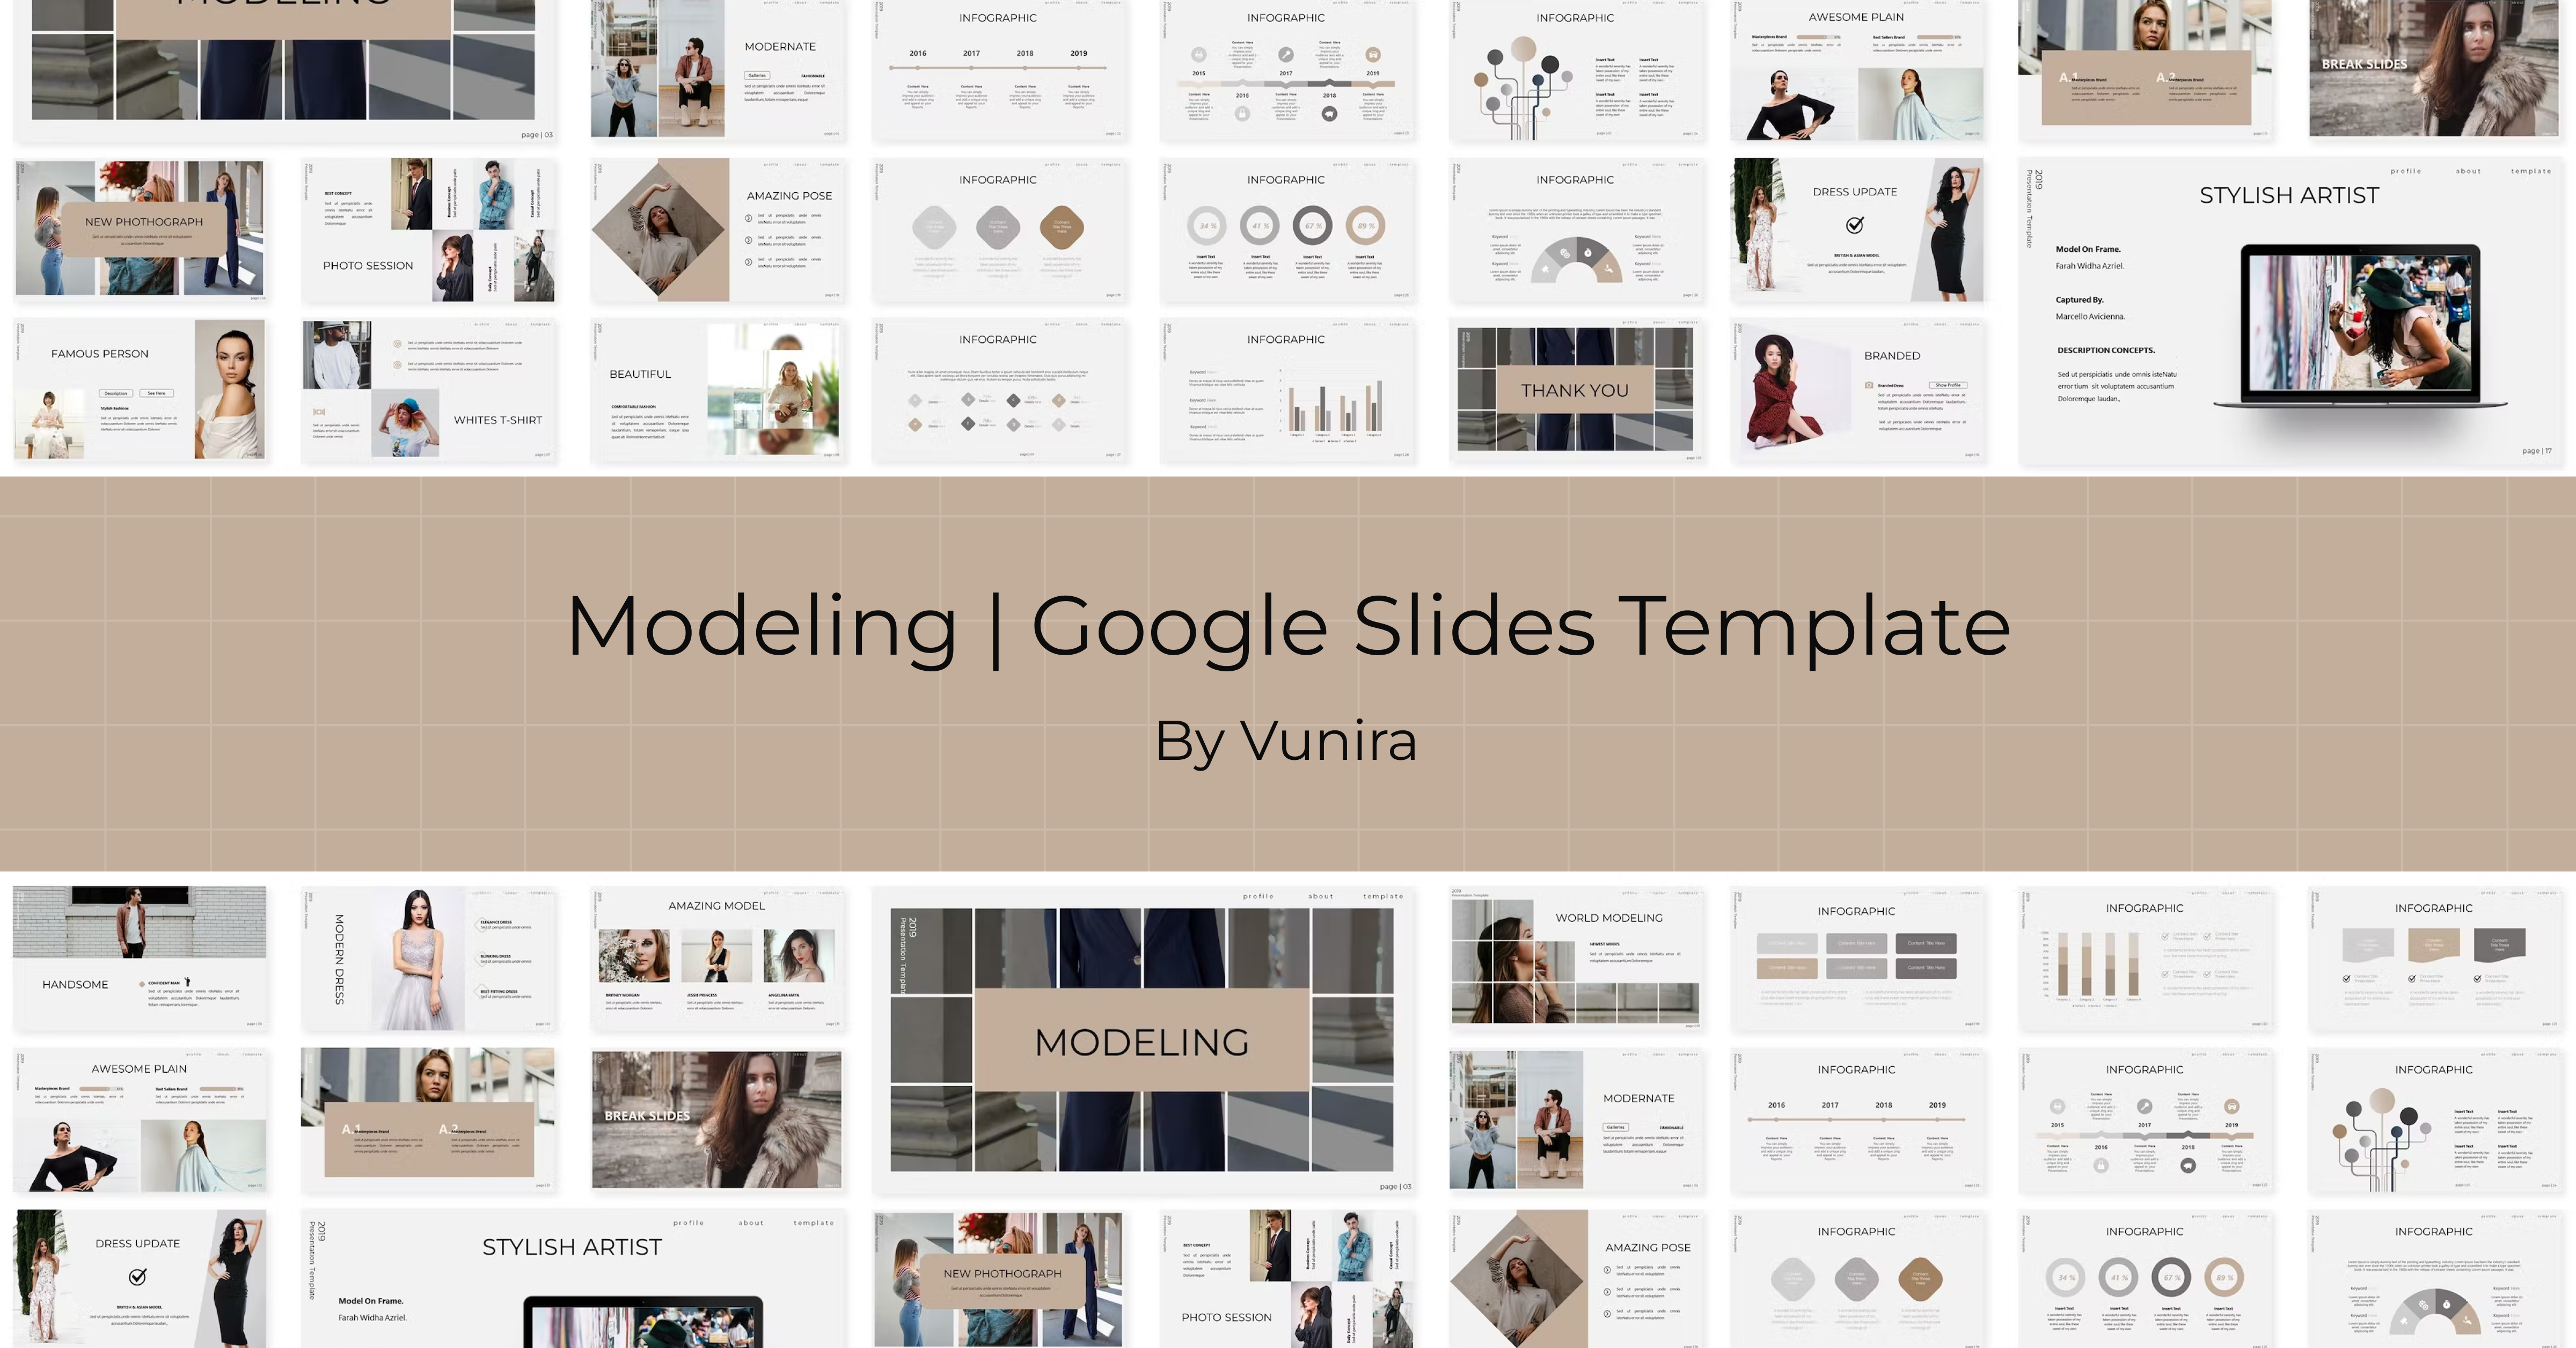 Modeling | Google Slides Template - Facebook.